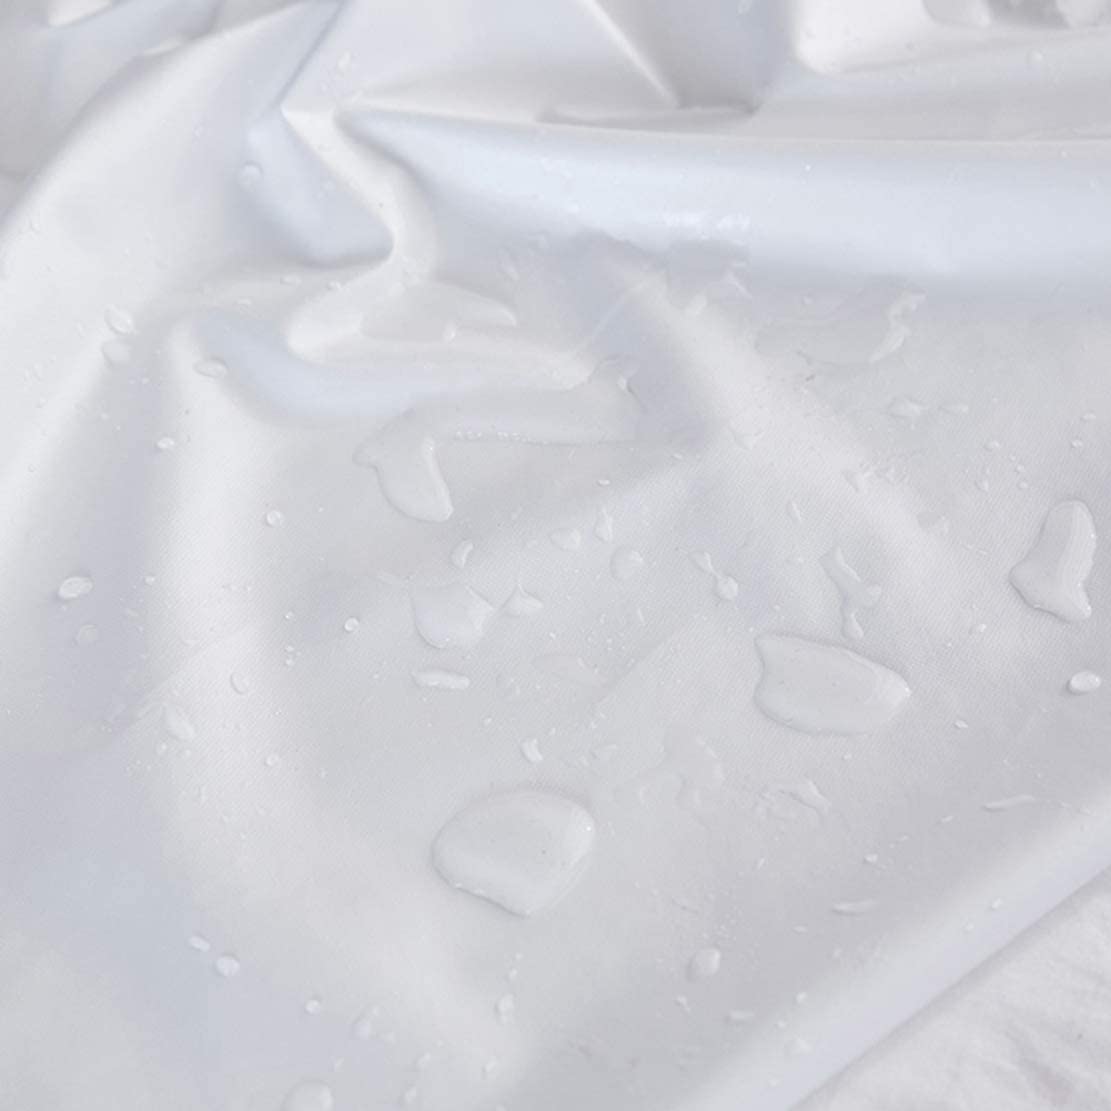  DEAR-JY Funda de Cama Impermeable Doble Capa antibacteriana antiácaros Cubierta de colchón Impermeable Transpiración de orina separada,120cmX200cmX30cm 